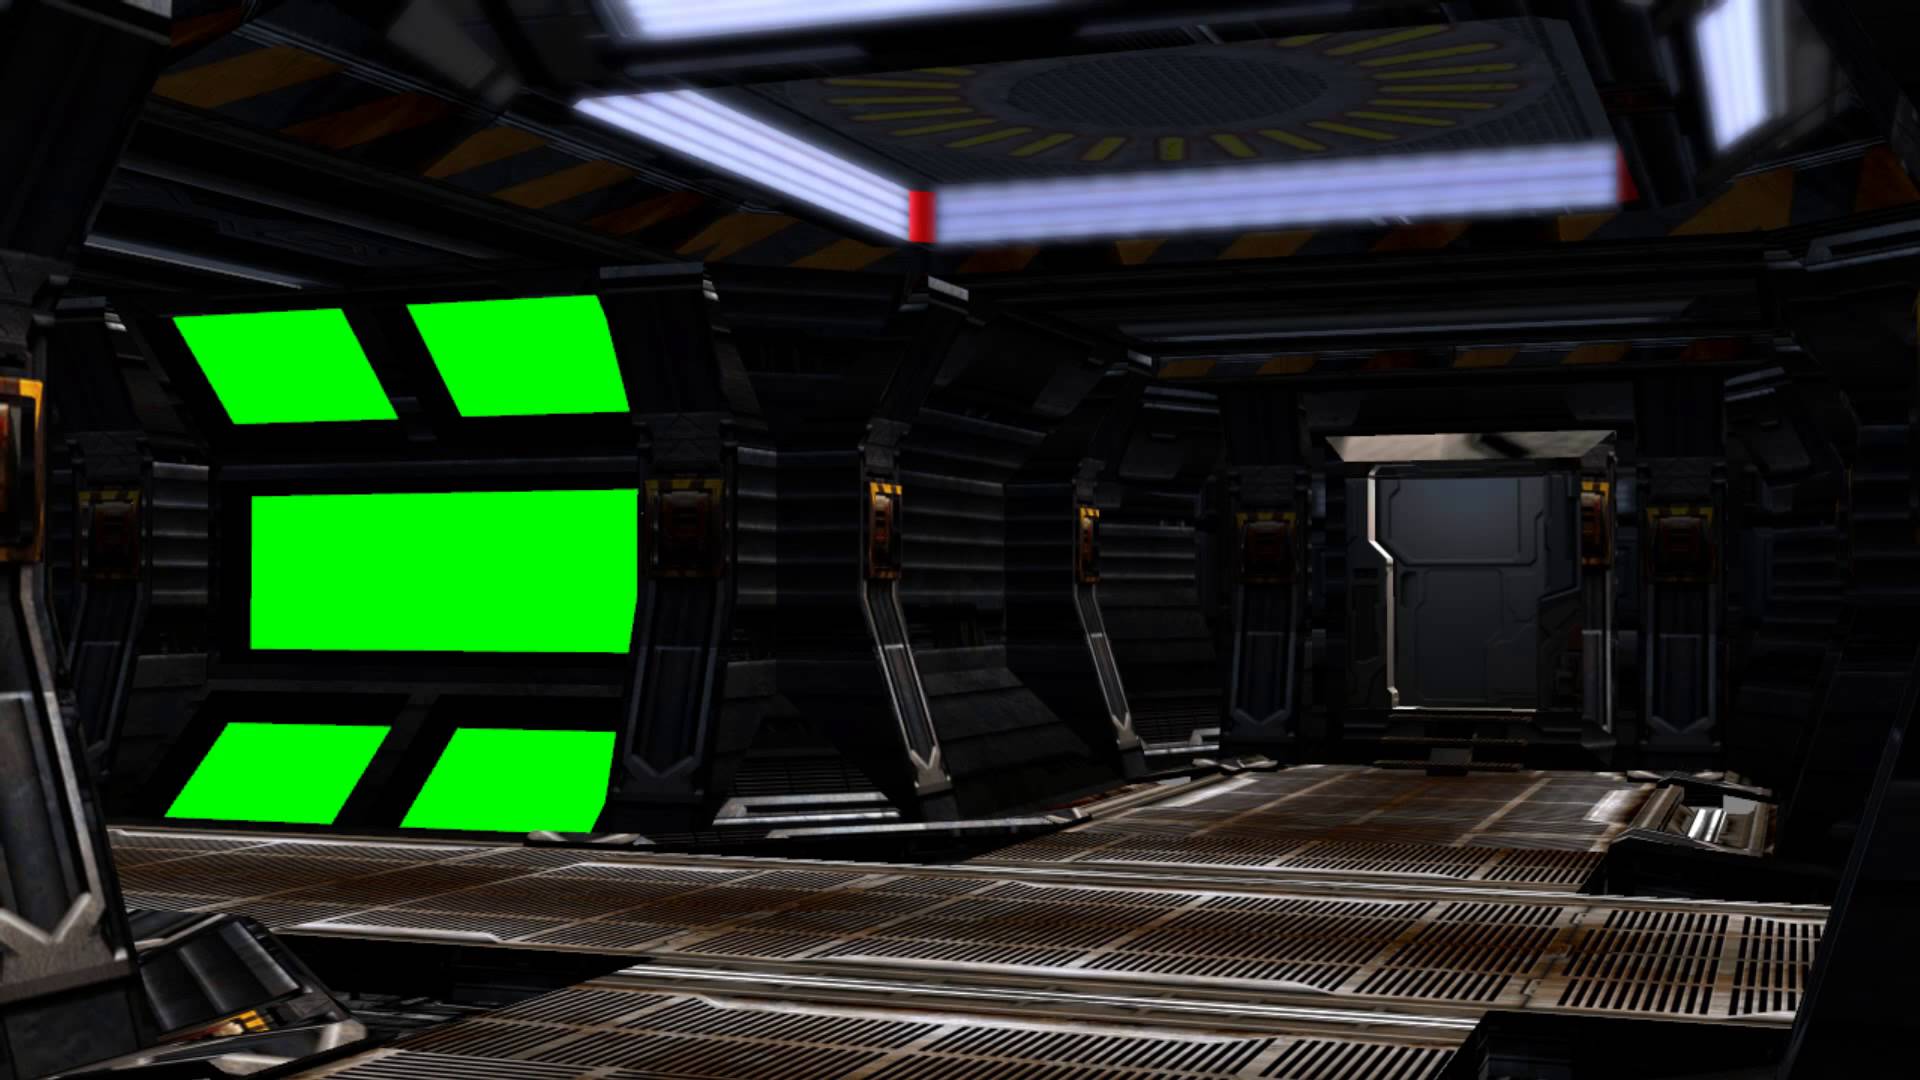 Chỉ với bộ không gian nội thất tàu vũ trụ màn hình xanh, bạn có thể trải nghiệm cuộc hành trình không gian cực kỳ hấp dẫn. Với không gian tàu vũ trụ vô cùng chân thực và tuyệt đẹp, bạn sẽ có những khoảnh khắc đáng nhớ cùng với Spaceship Interior green screen set.